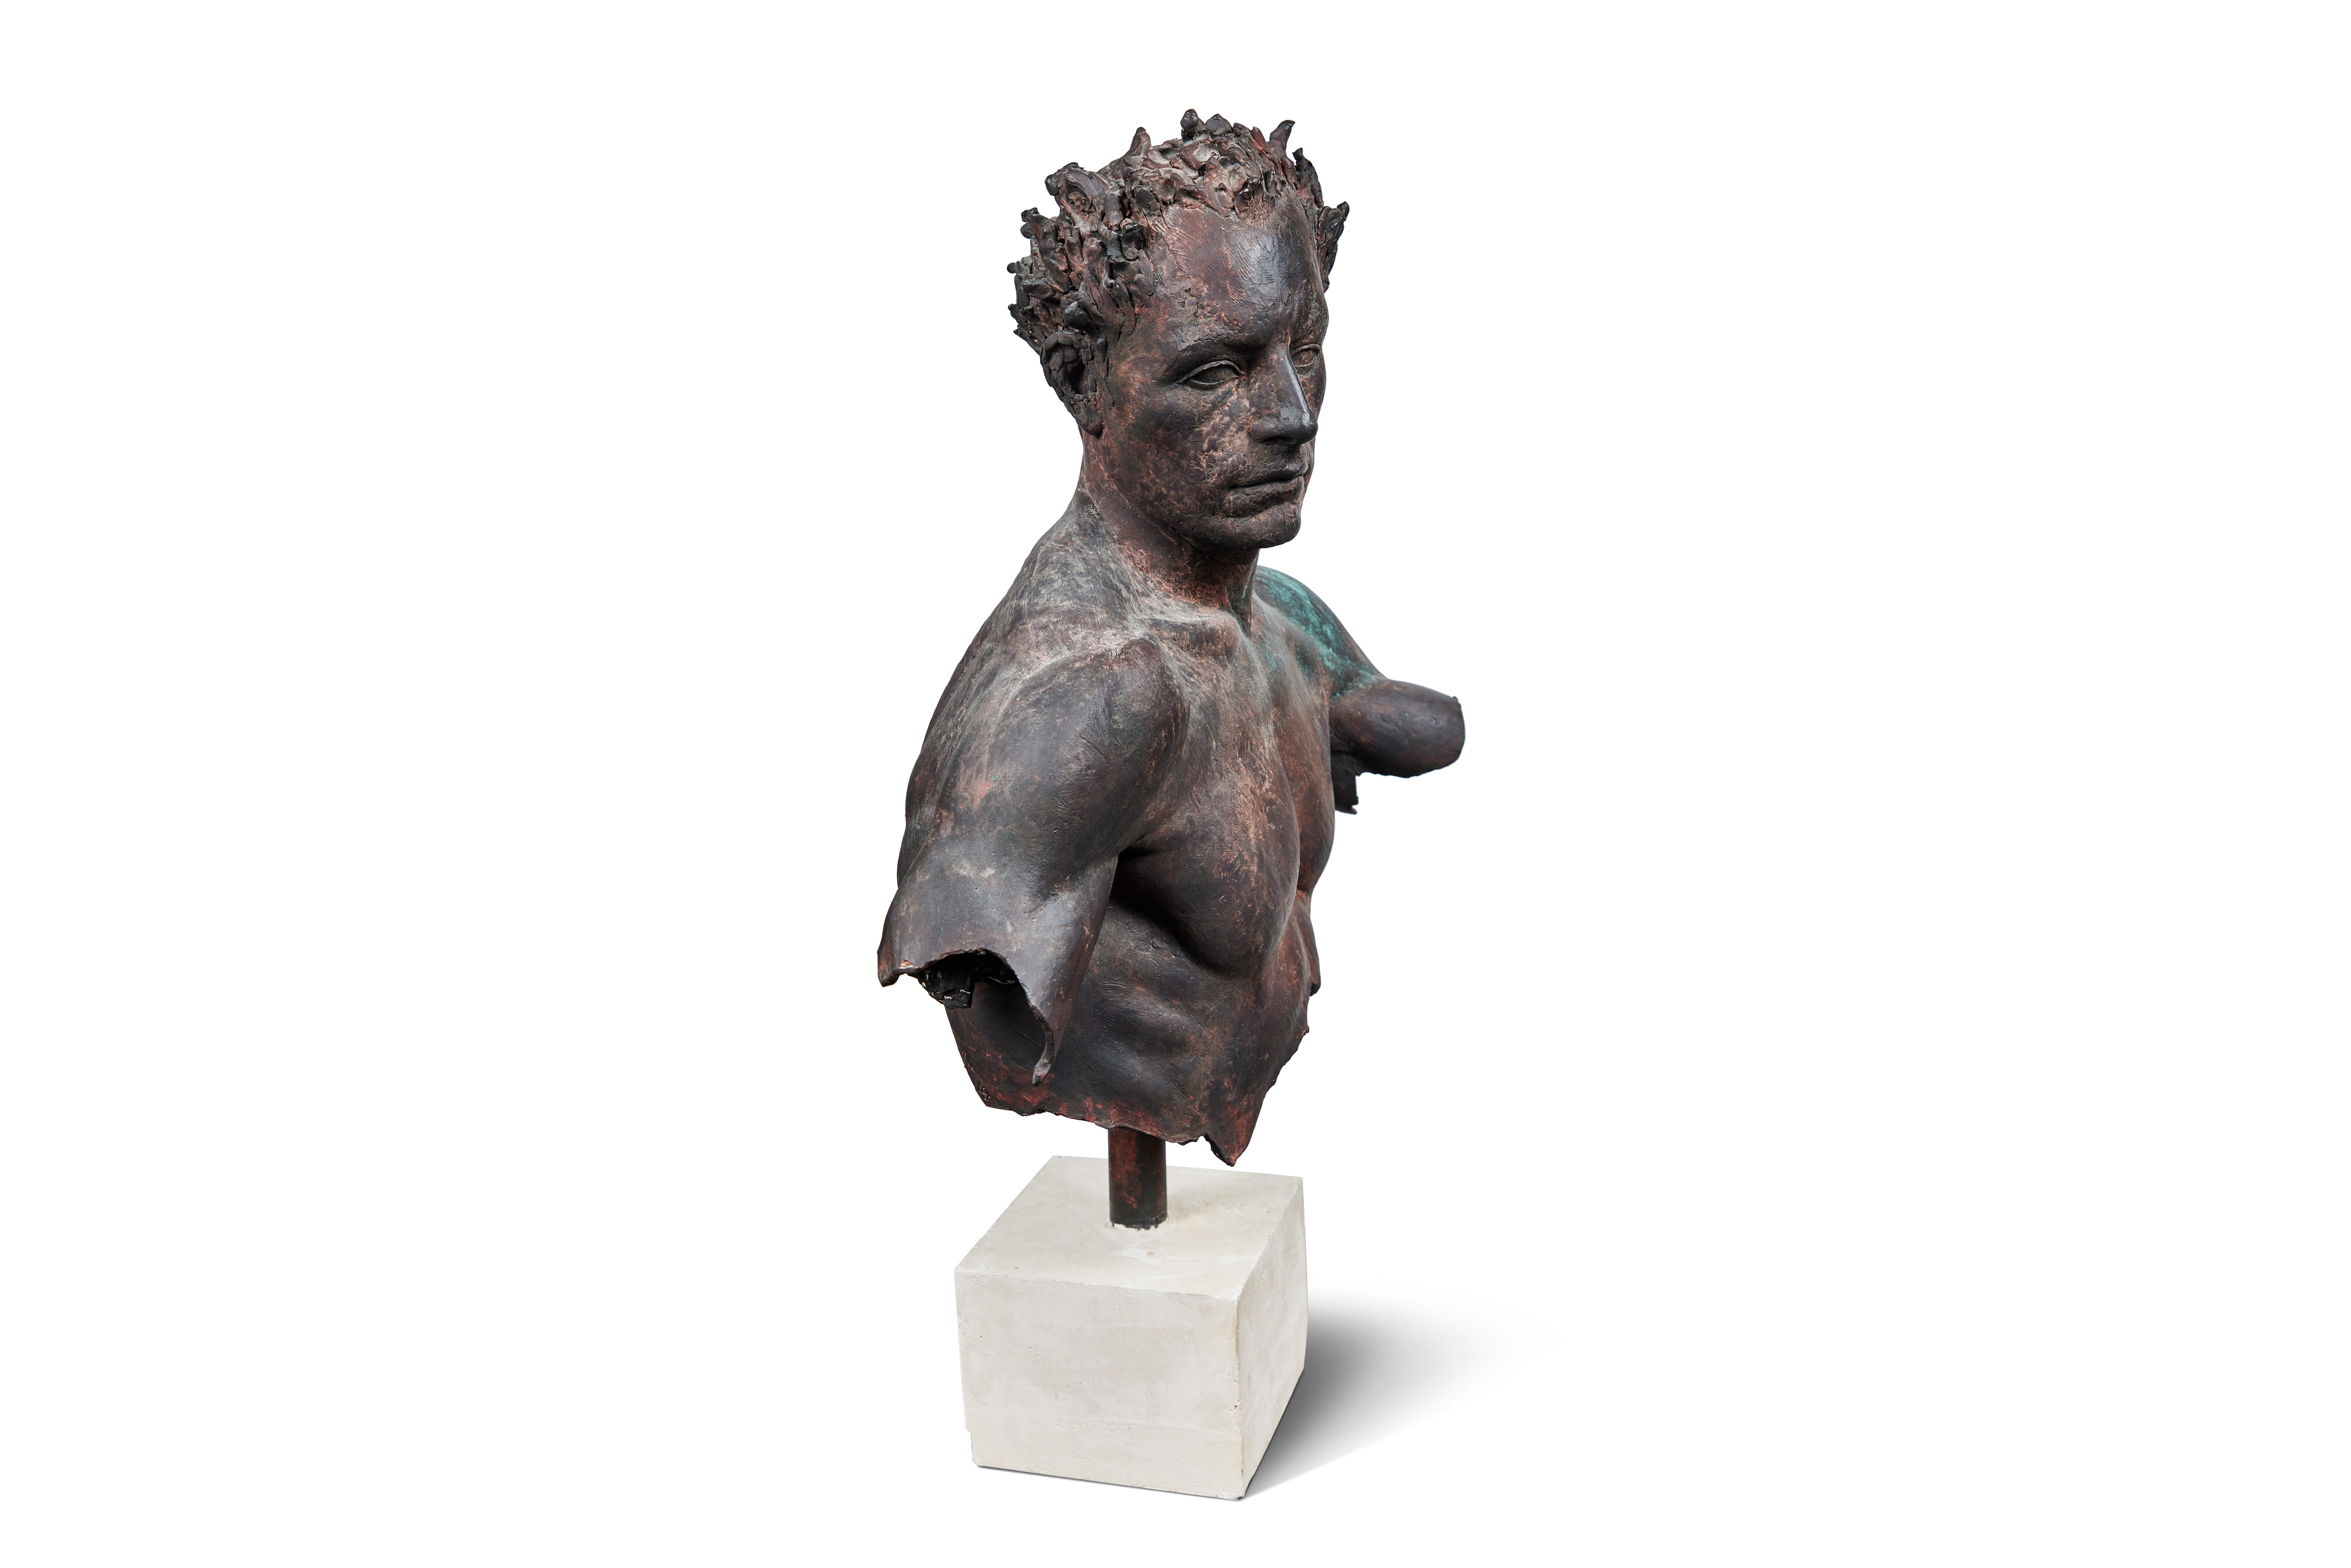 Buste en bronze monté sur un socle en marbre travertin par Sabin Howard, 2005. Signé, numéroté 7/12.
Sabin Howard est un sculpteur figuratif classique basé à New York, avec un studio dans le Bronx. Il est membre du conseil d'administration de la